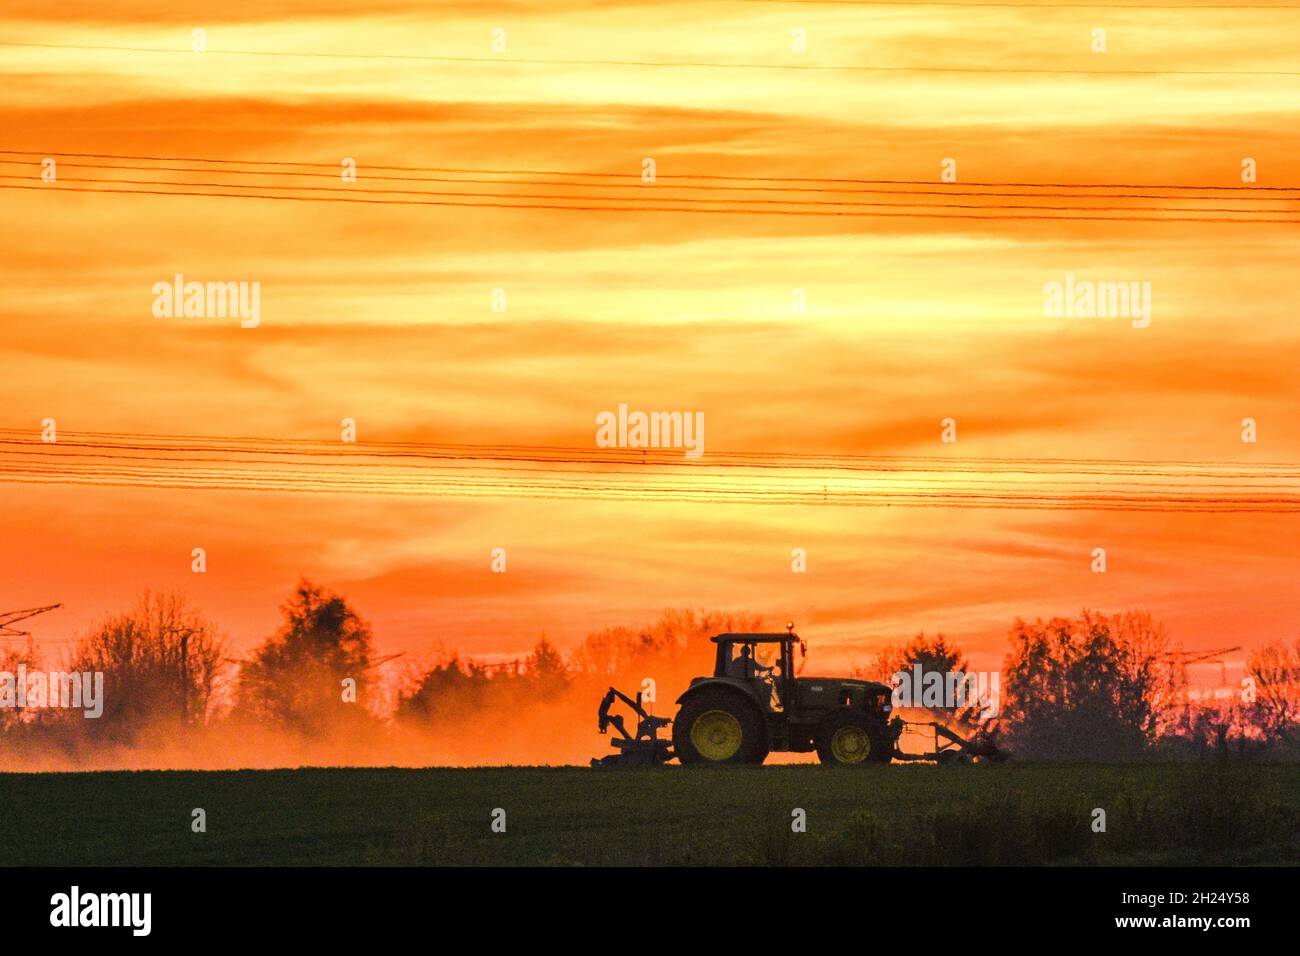 Travaux agricoles au coucher du soleil.Tracteur dans un champ Banque D'Images